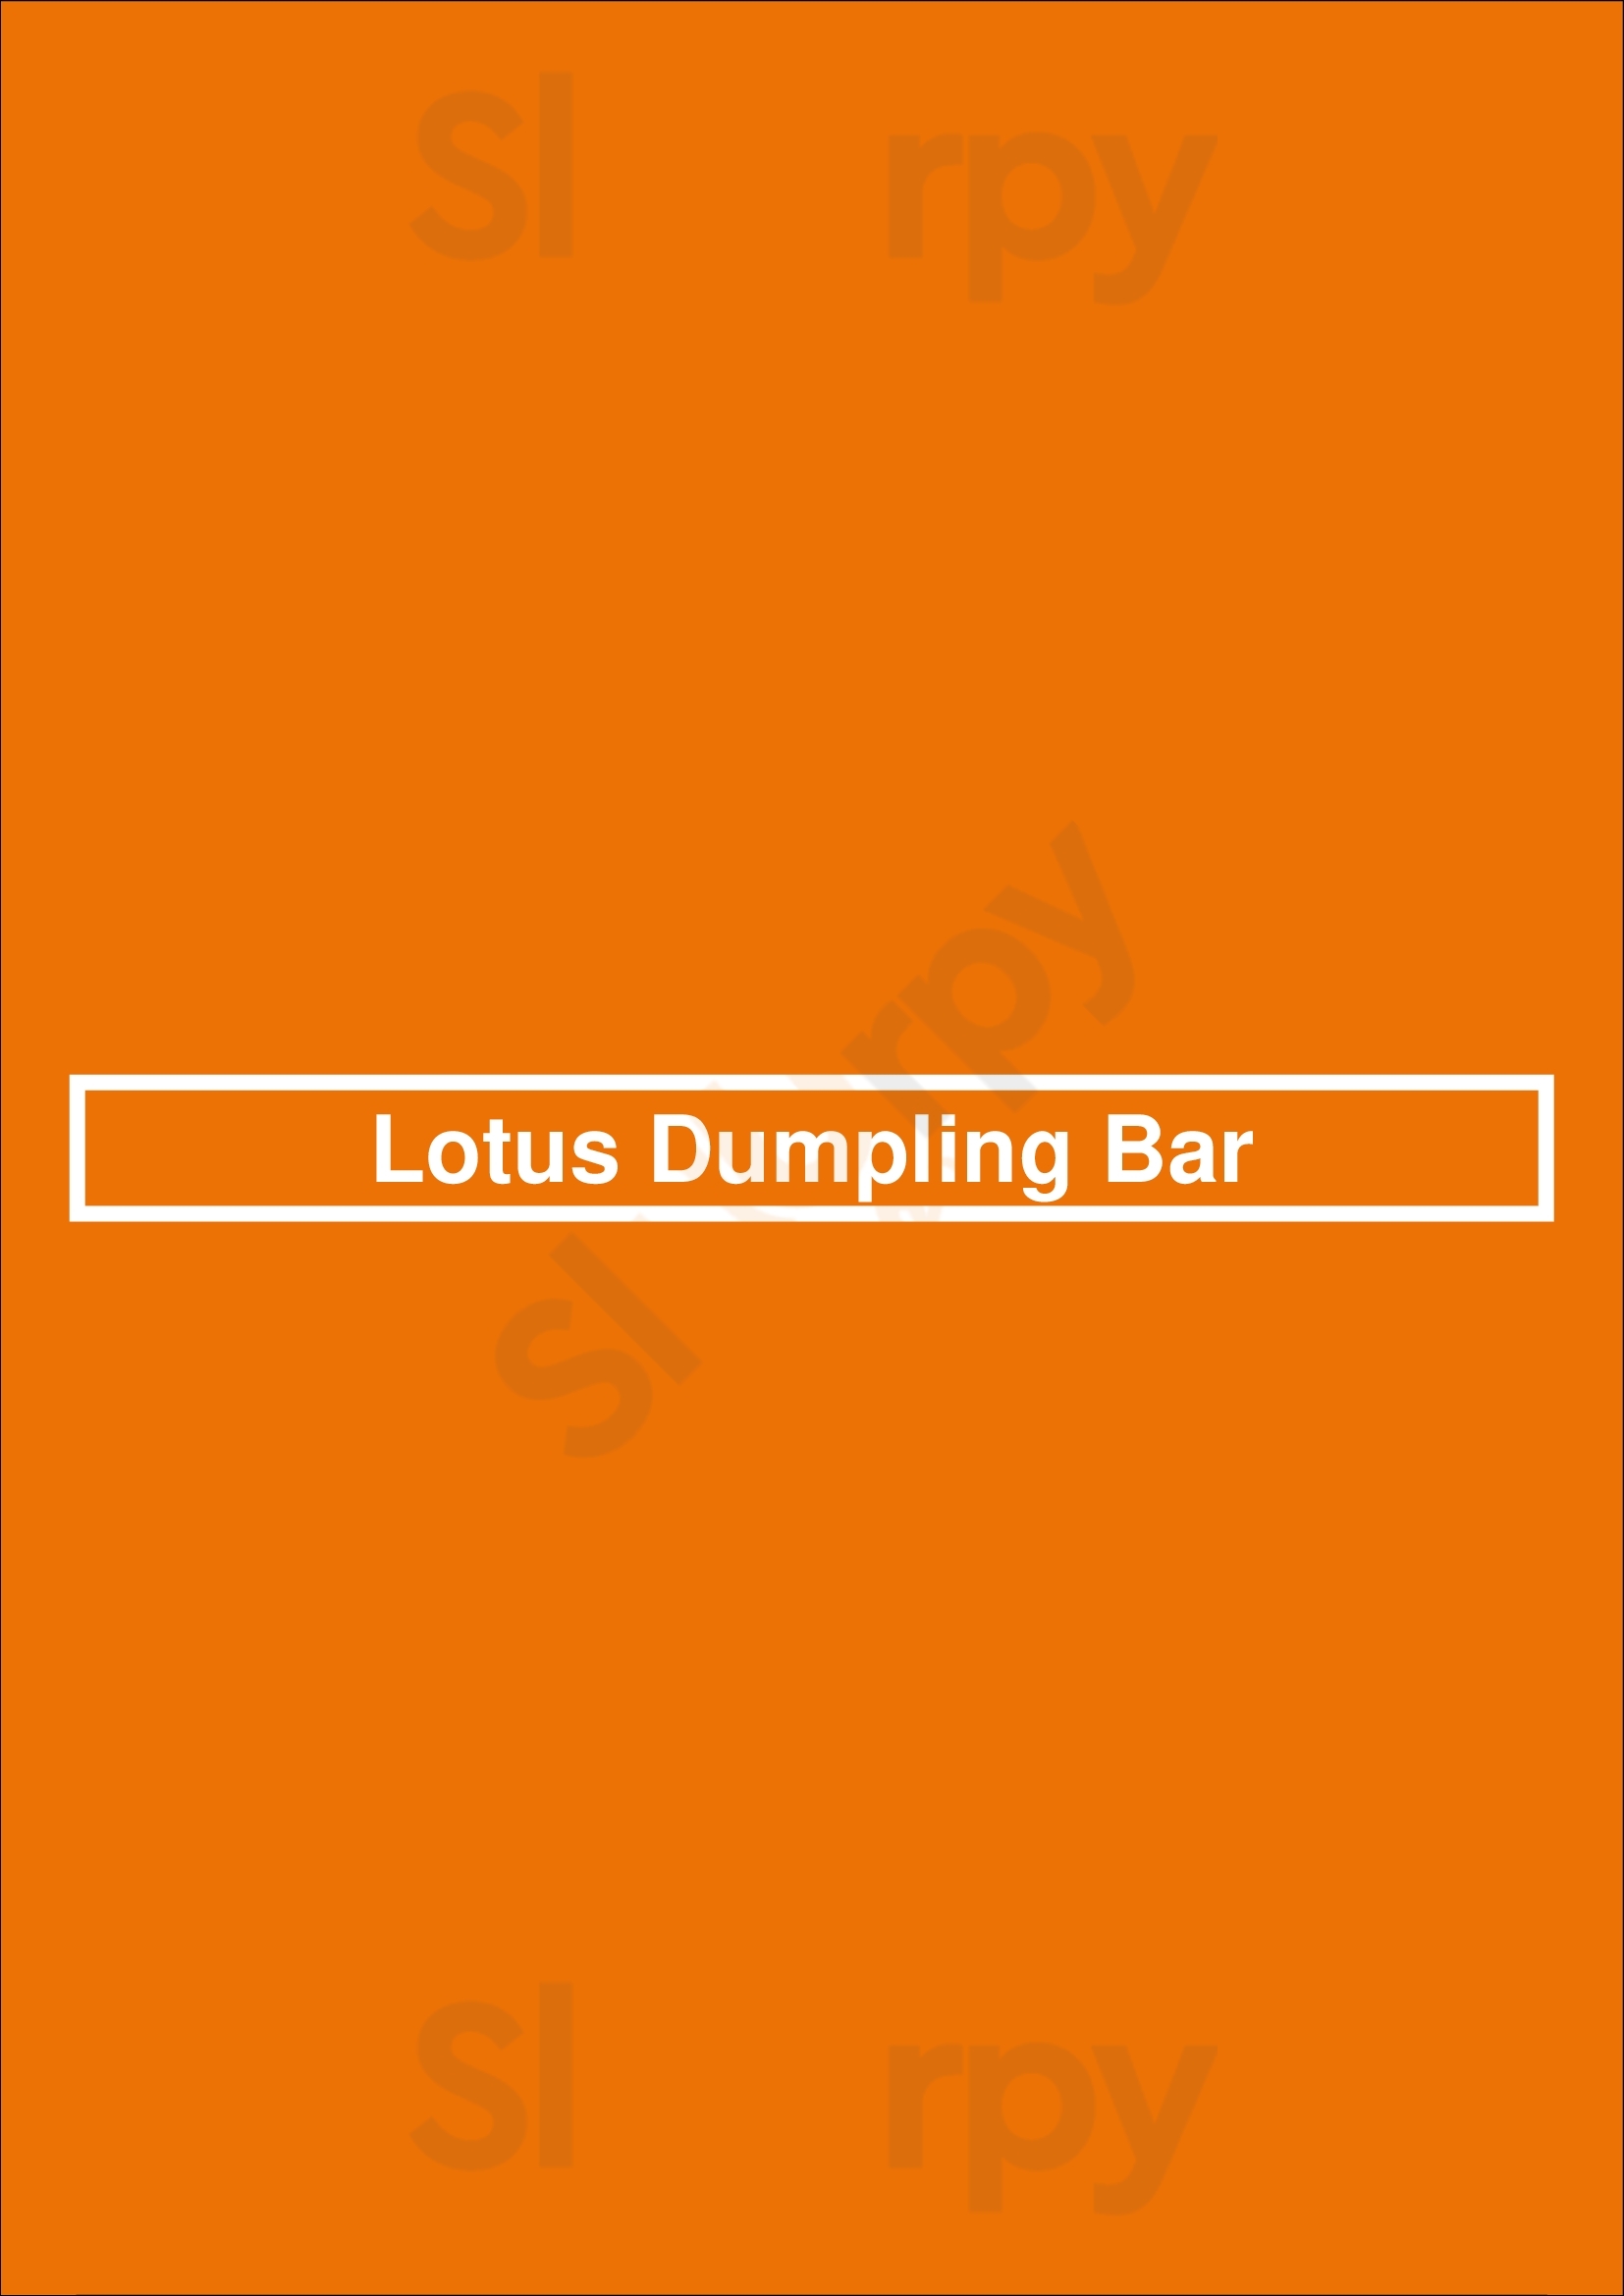 Lotus Dumpling Bar Sydney Menu - 1